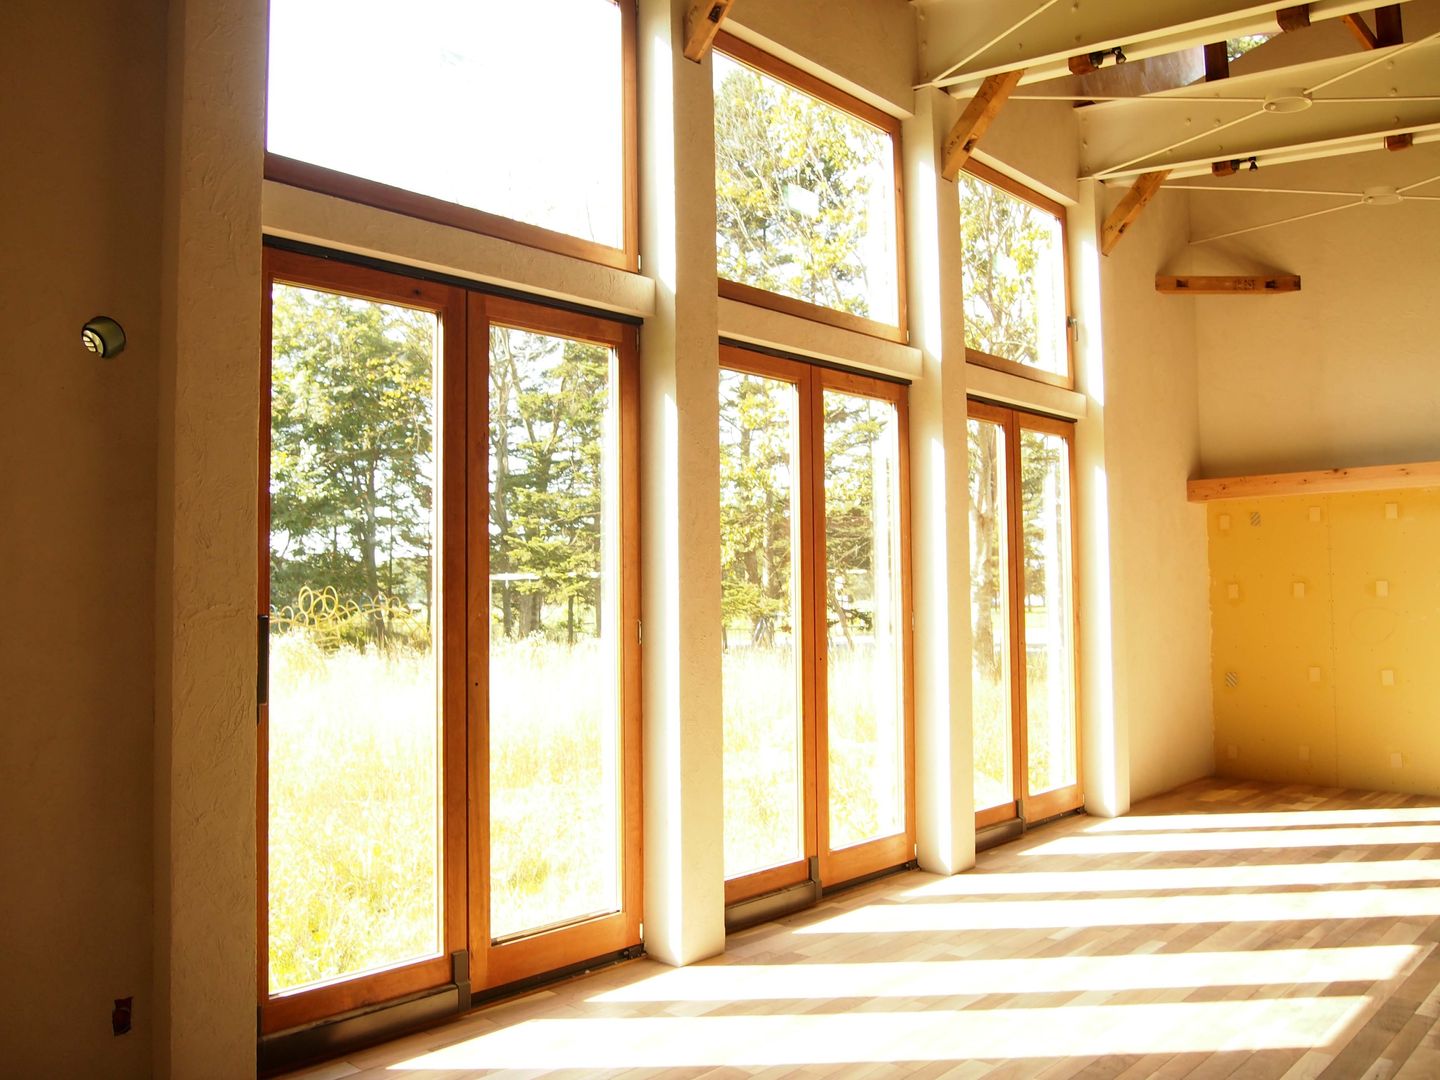 『家』 から、暮らしを彩る 『小物』 まで、 家の全てを『旅する木』で！！, 家具工房旅する木 家具工房旅する木 Industrial style windows & doors Windows